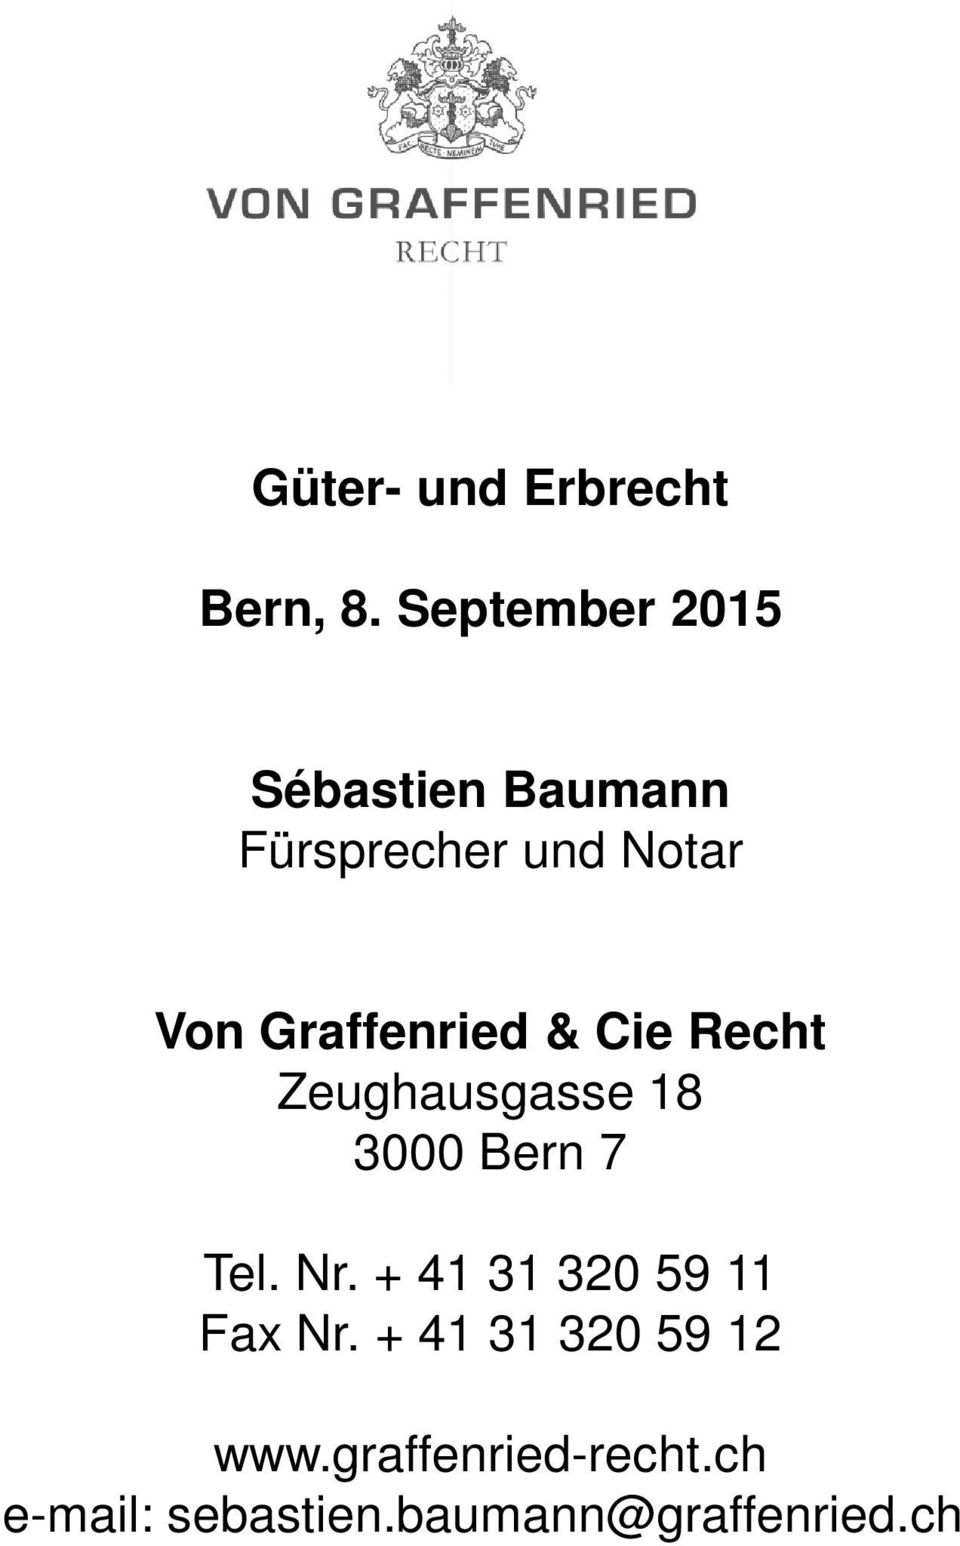 Graffenried & Cie Recht Zeughausgasse 18 3000 Bern 7 Tel. Nr.